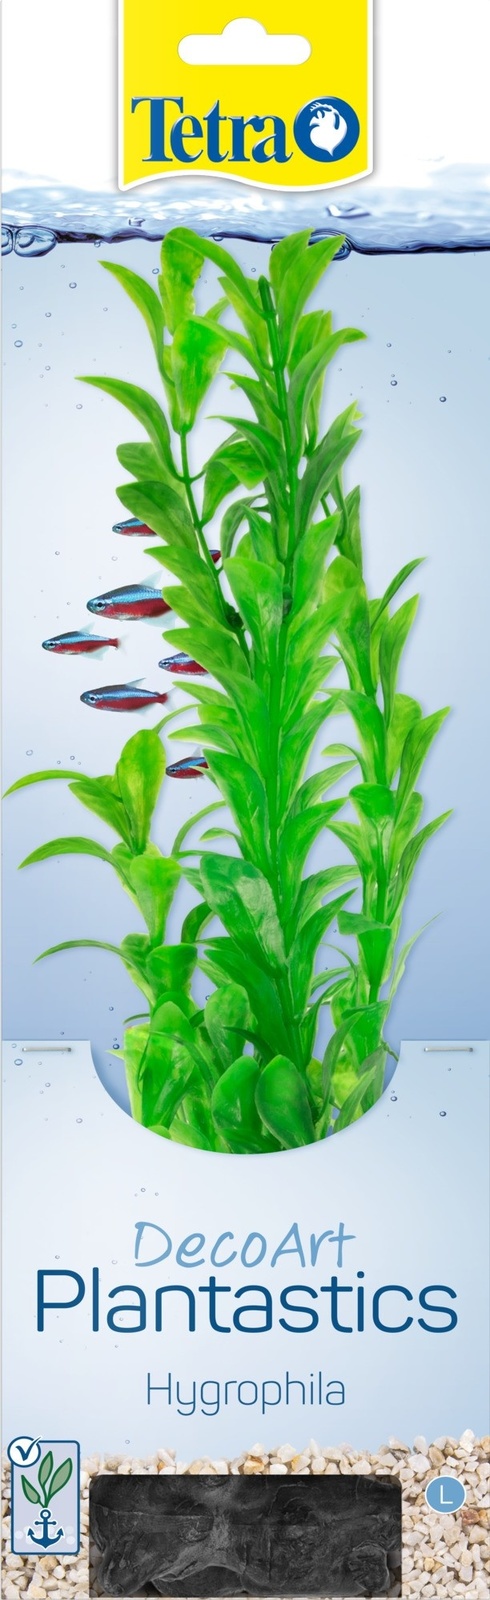 Tetra (оборудование) Tetra (оборудование) растение DecoArt Plantastics Hygrophila 30 см (115 г) tetra оборудование tetra оборудование тест для воды 6 в 1 экспресс полоски 25 г